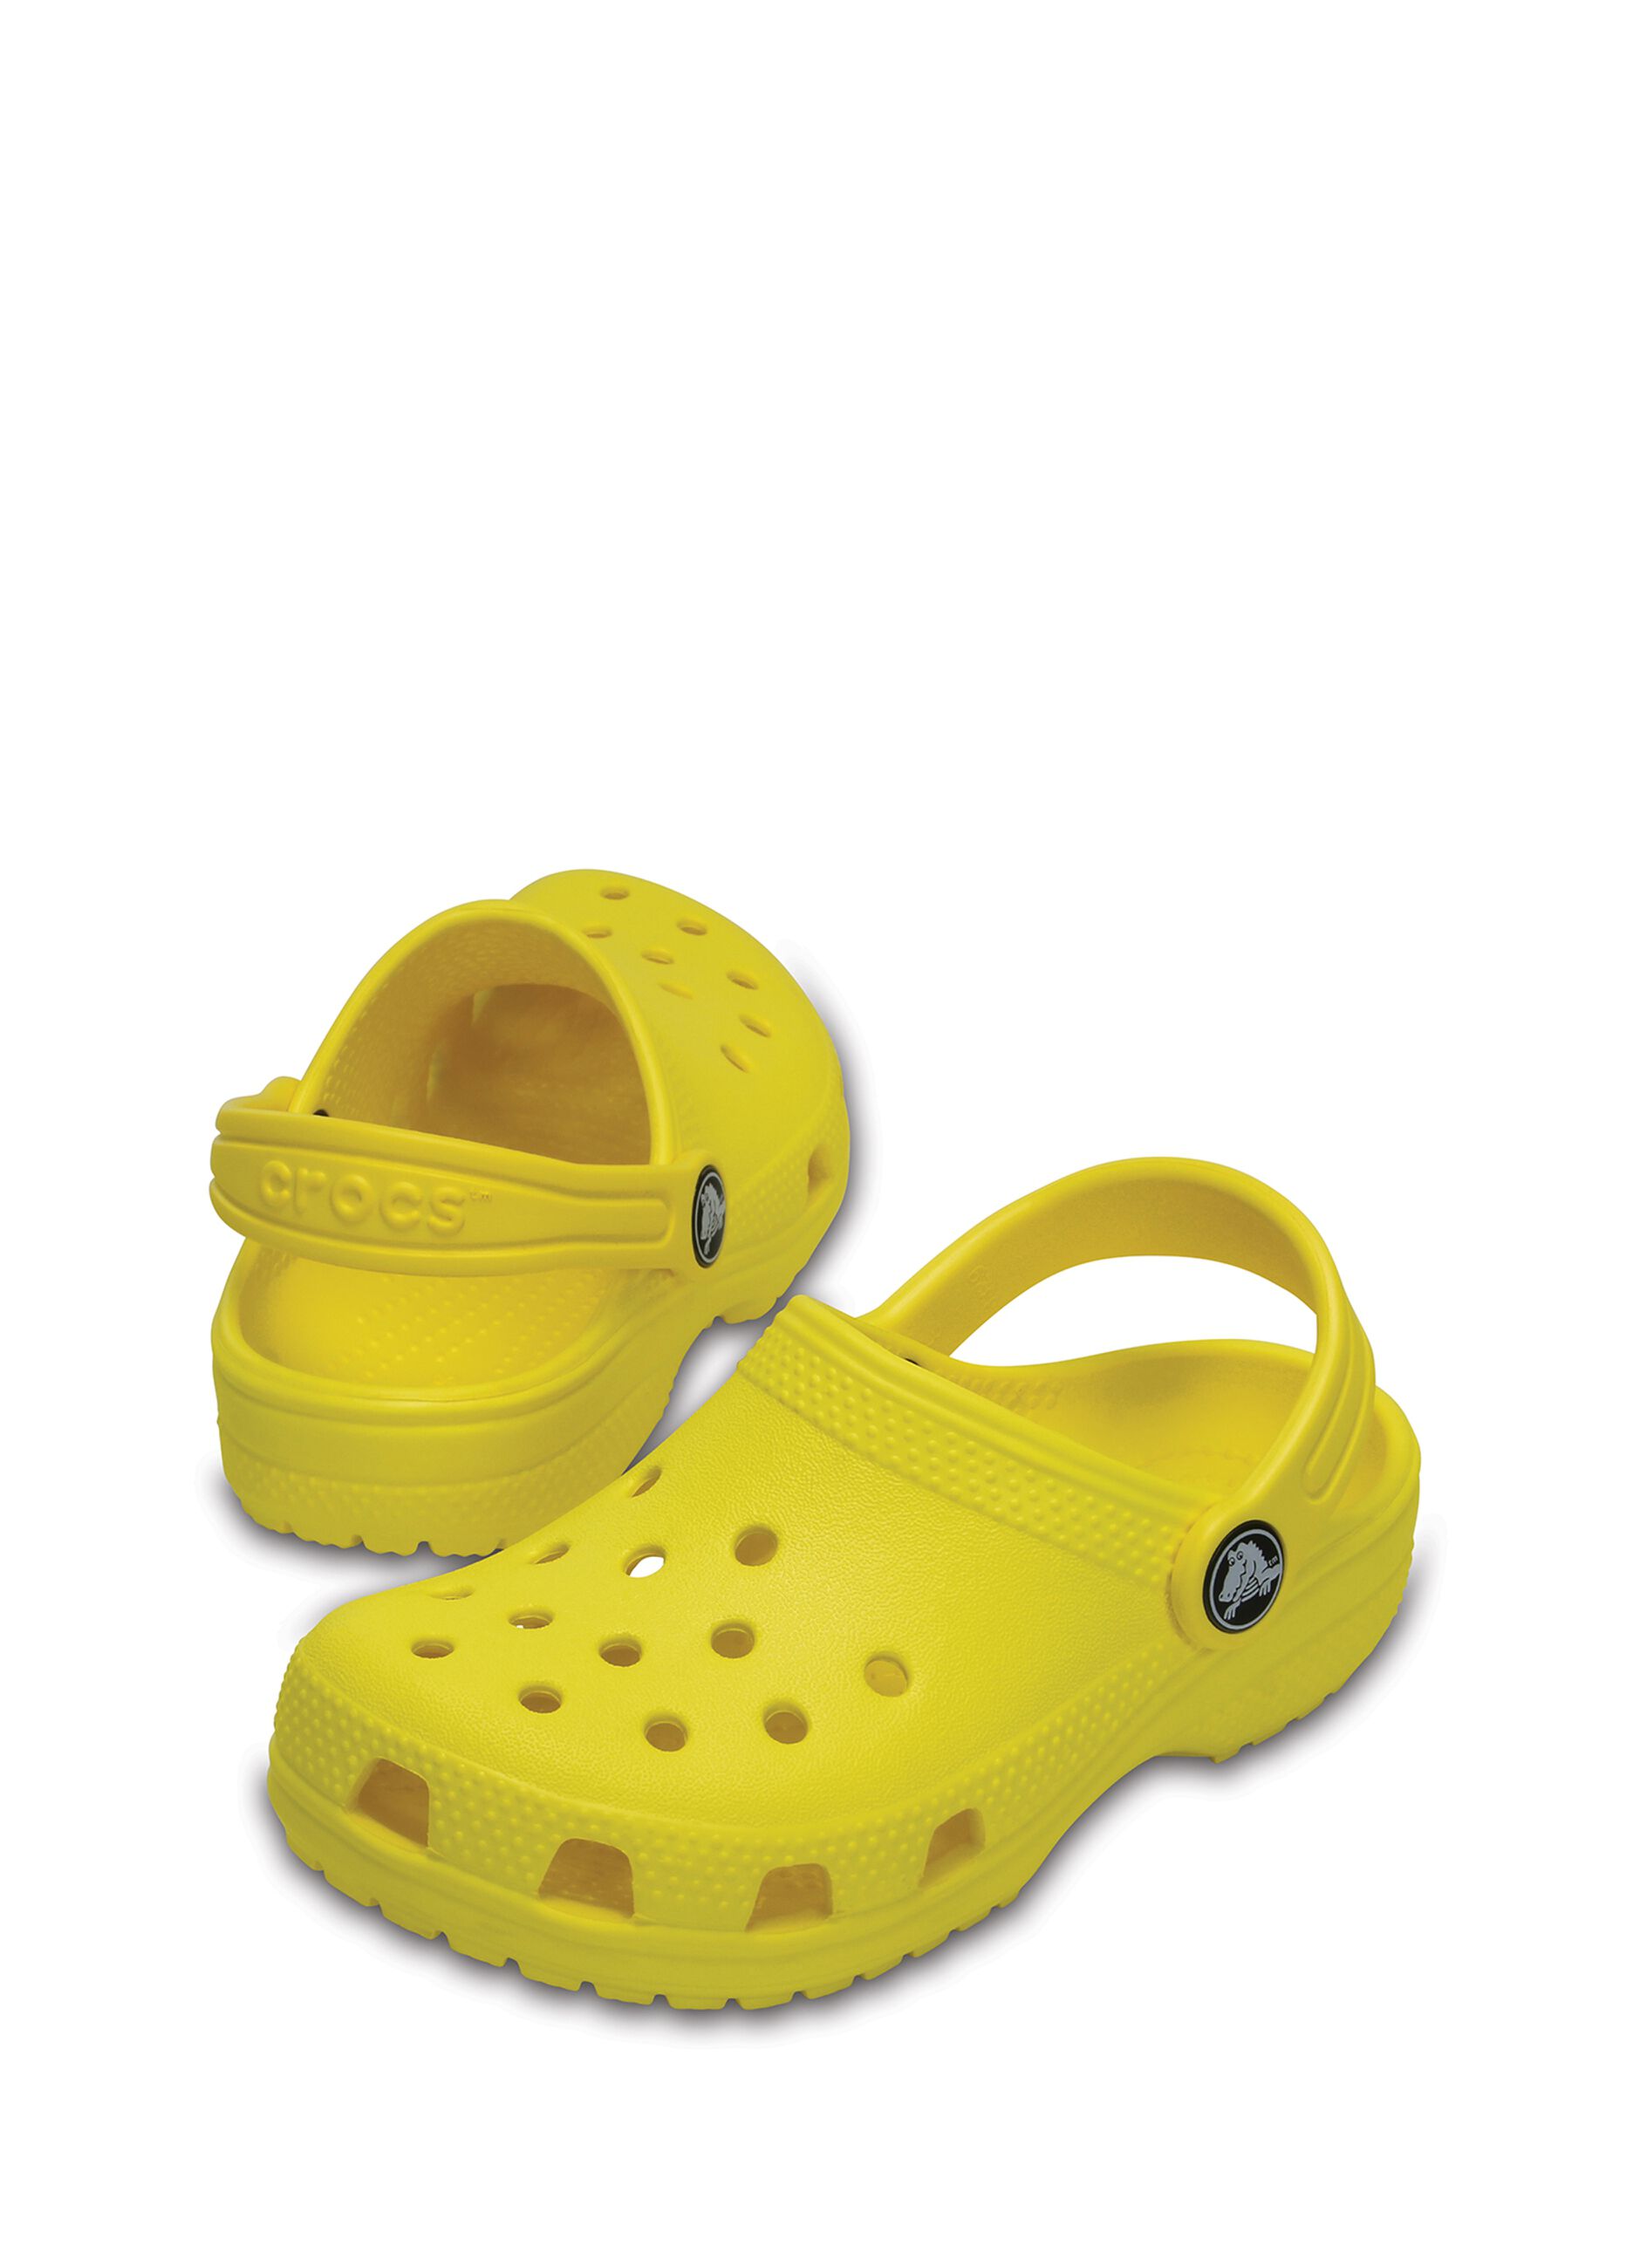 Crocs Classic Clog_3